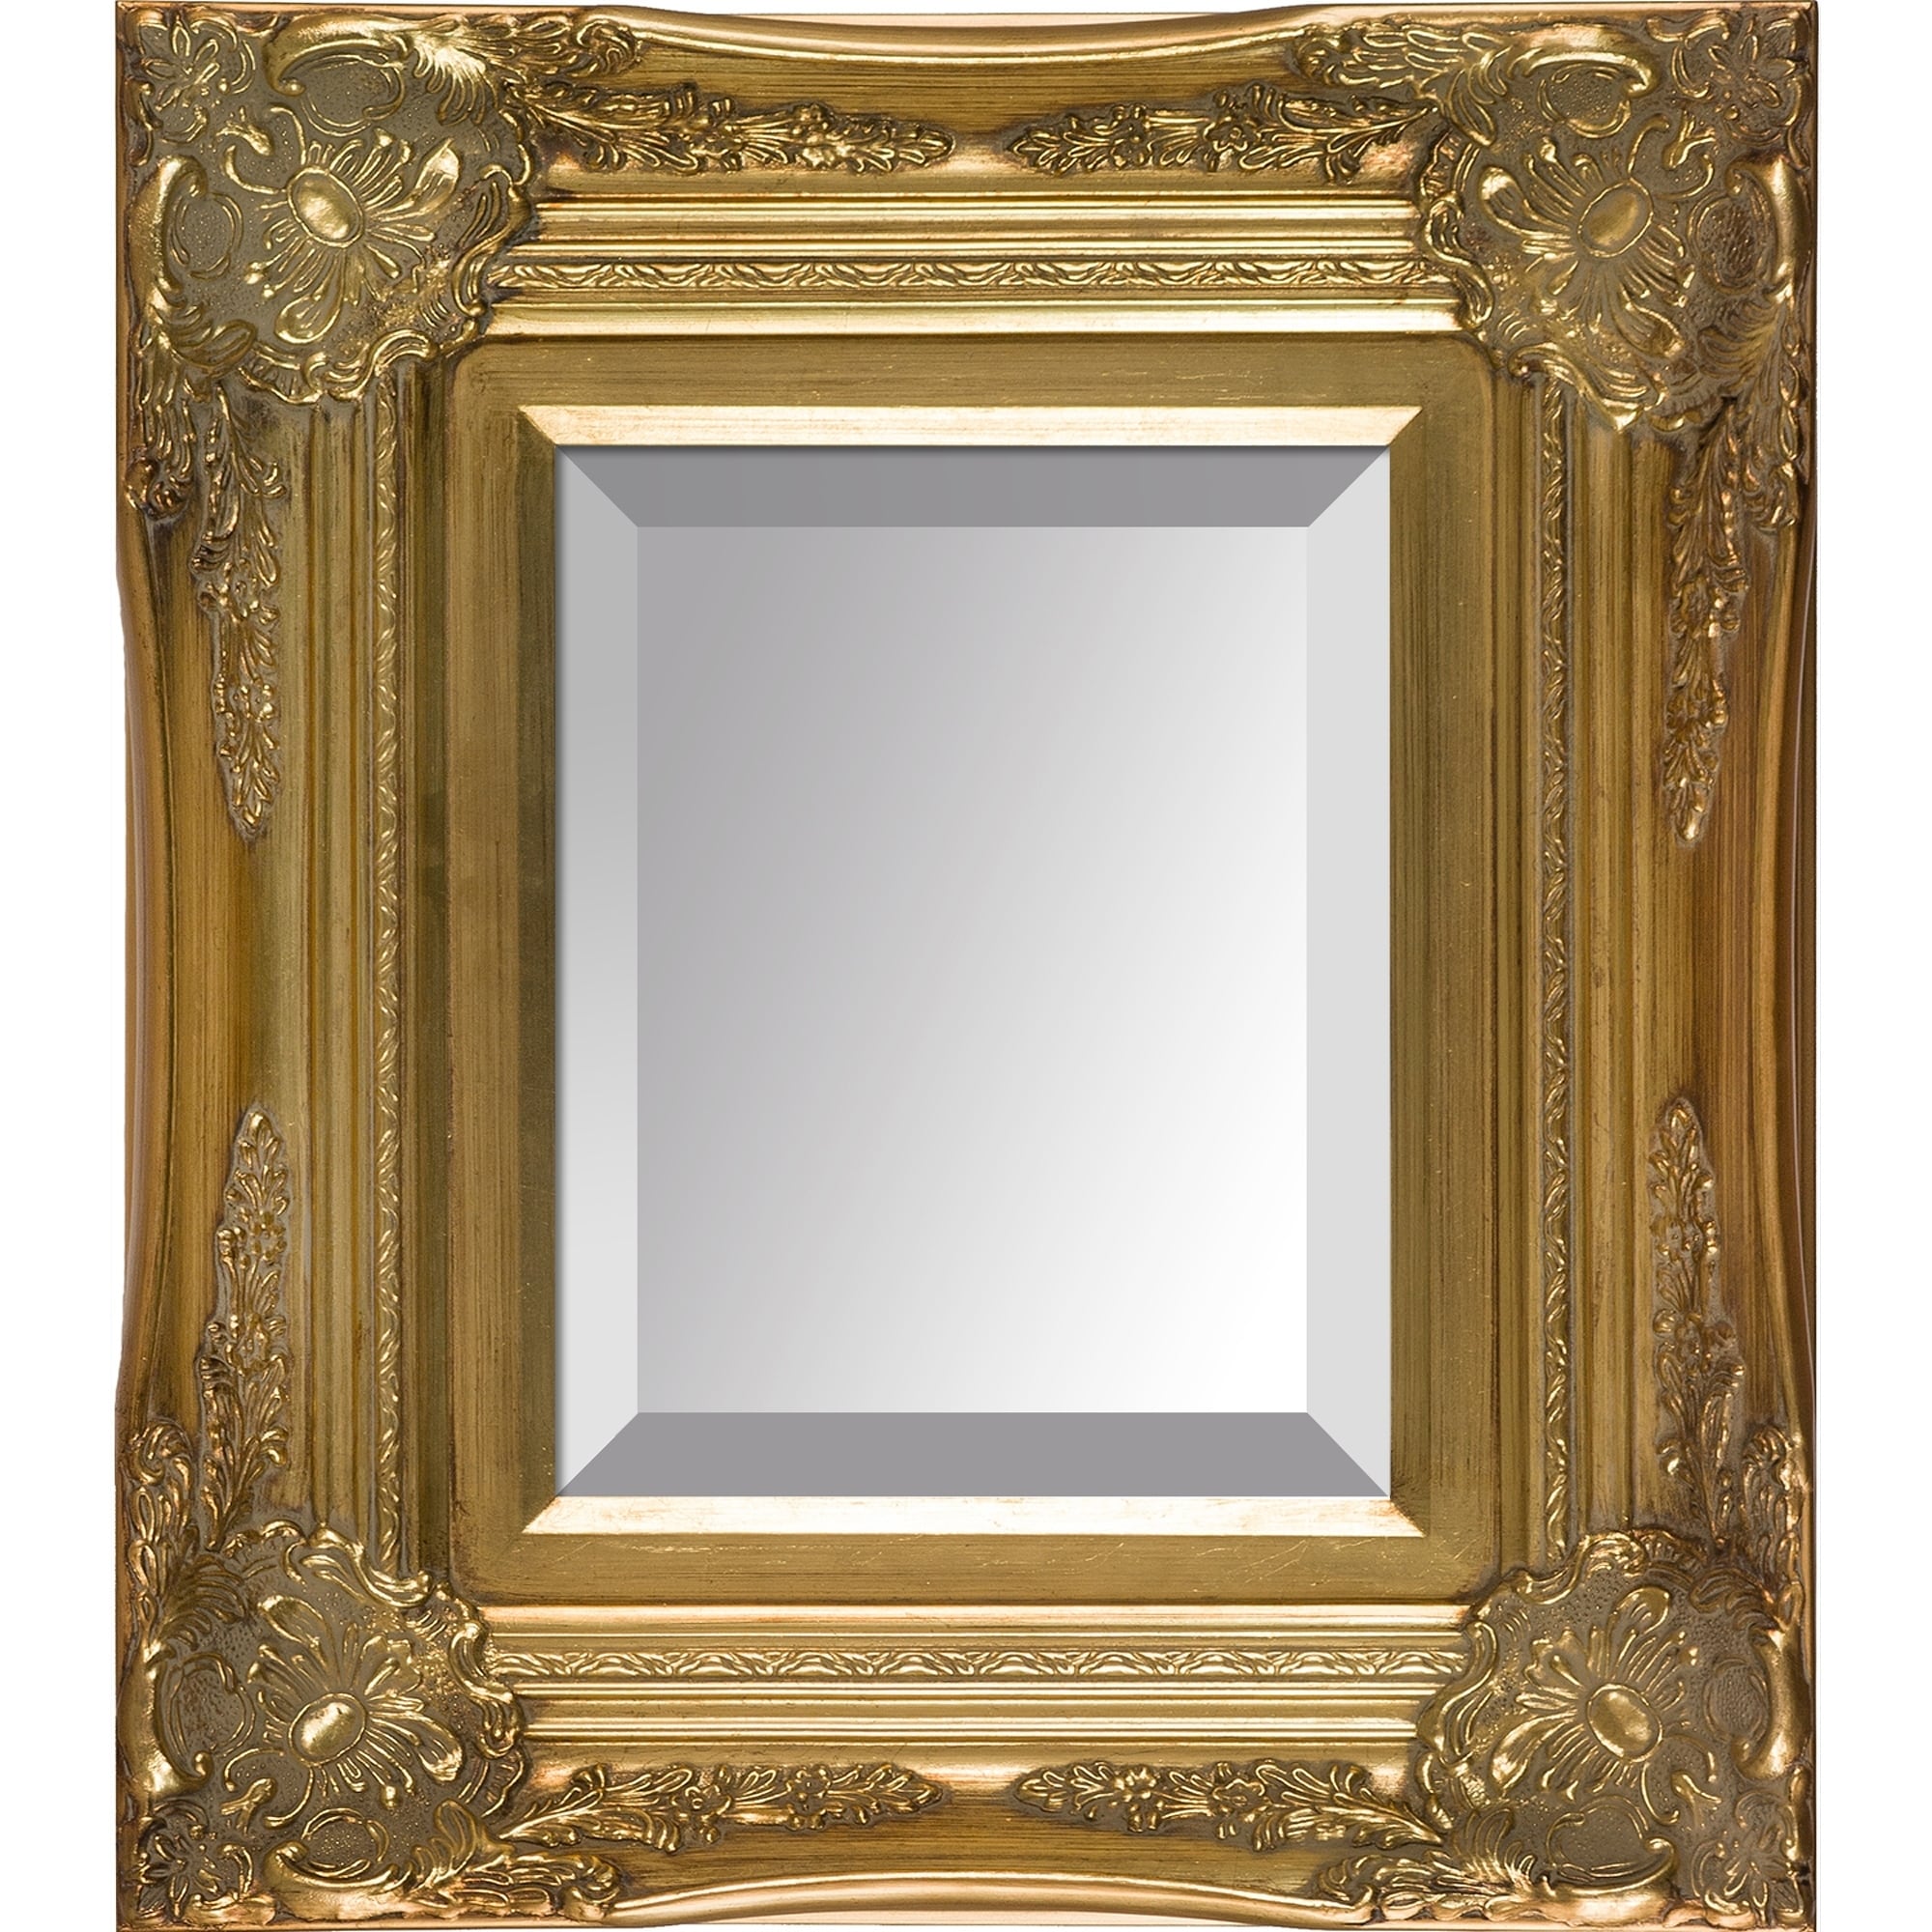 La Pastiche overstockArt Victorian Gold Frame Mirror On Sale Bed Bath   Beyond 29119183